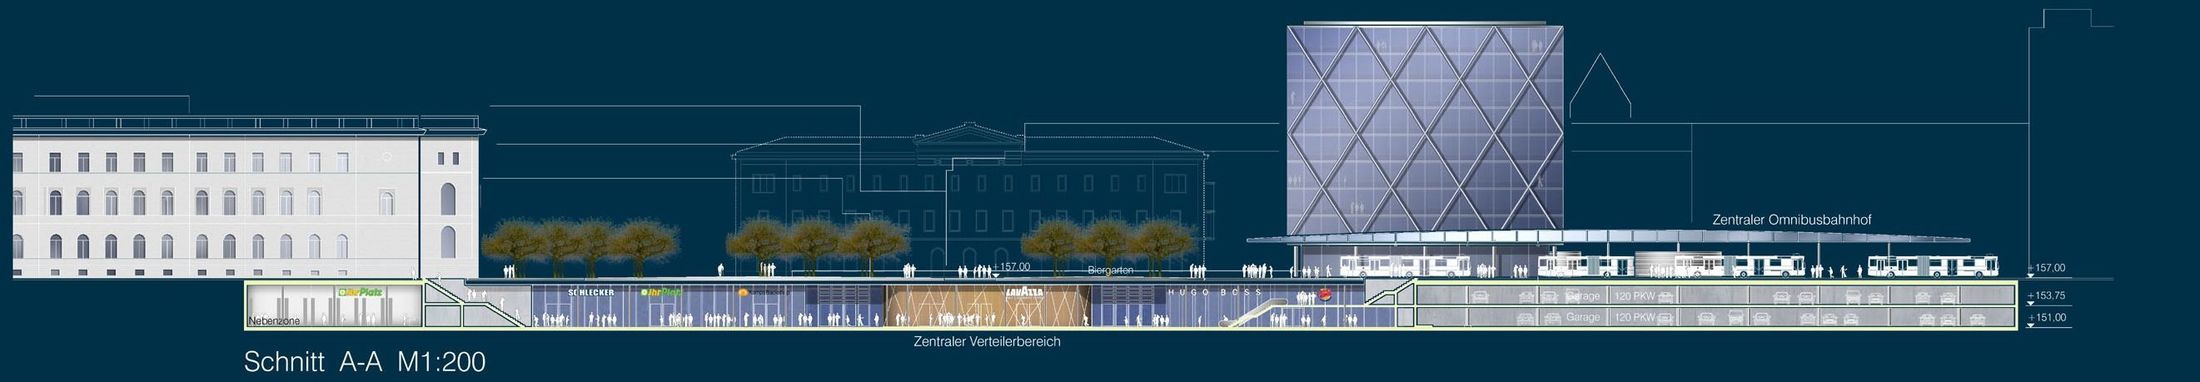 Neugestaltung Döppersberg Wuppertal - City Plaza 